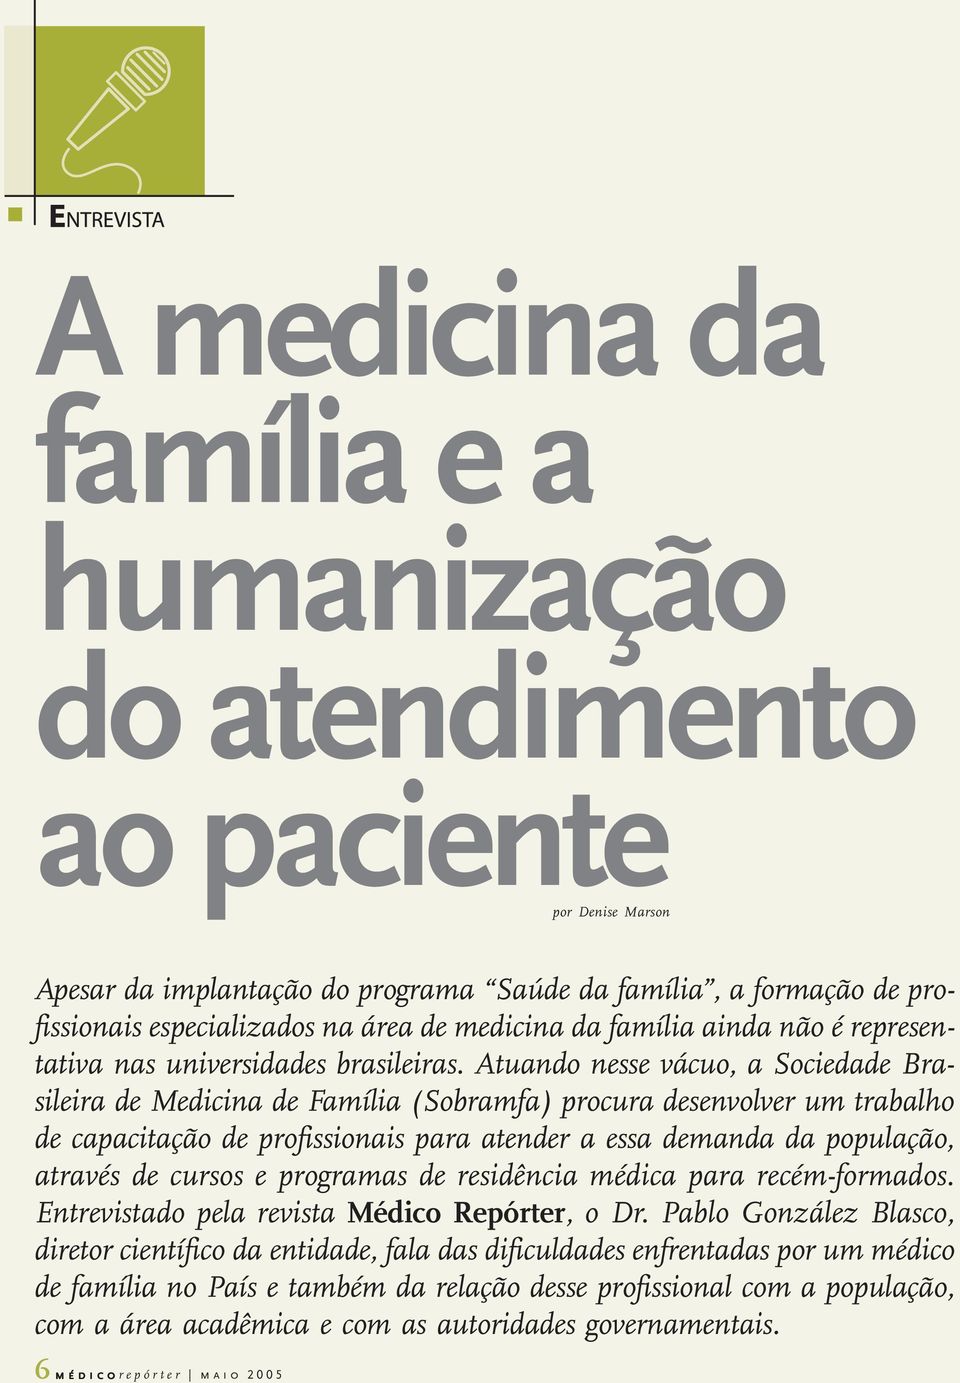 Atuando nesse vácuo, a Sociedade Brasileira de Medicina de Família (Sobramfa) procura desenvolver um trabalho de capacitação de profissionais para atender a essa demanda da população, através de